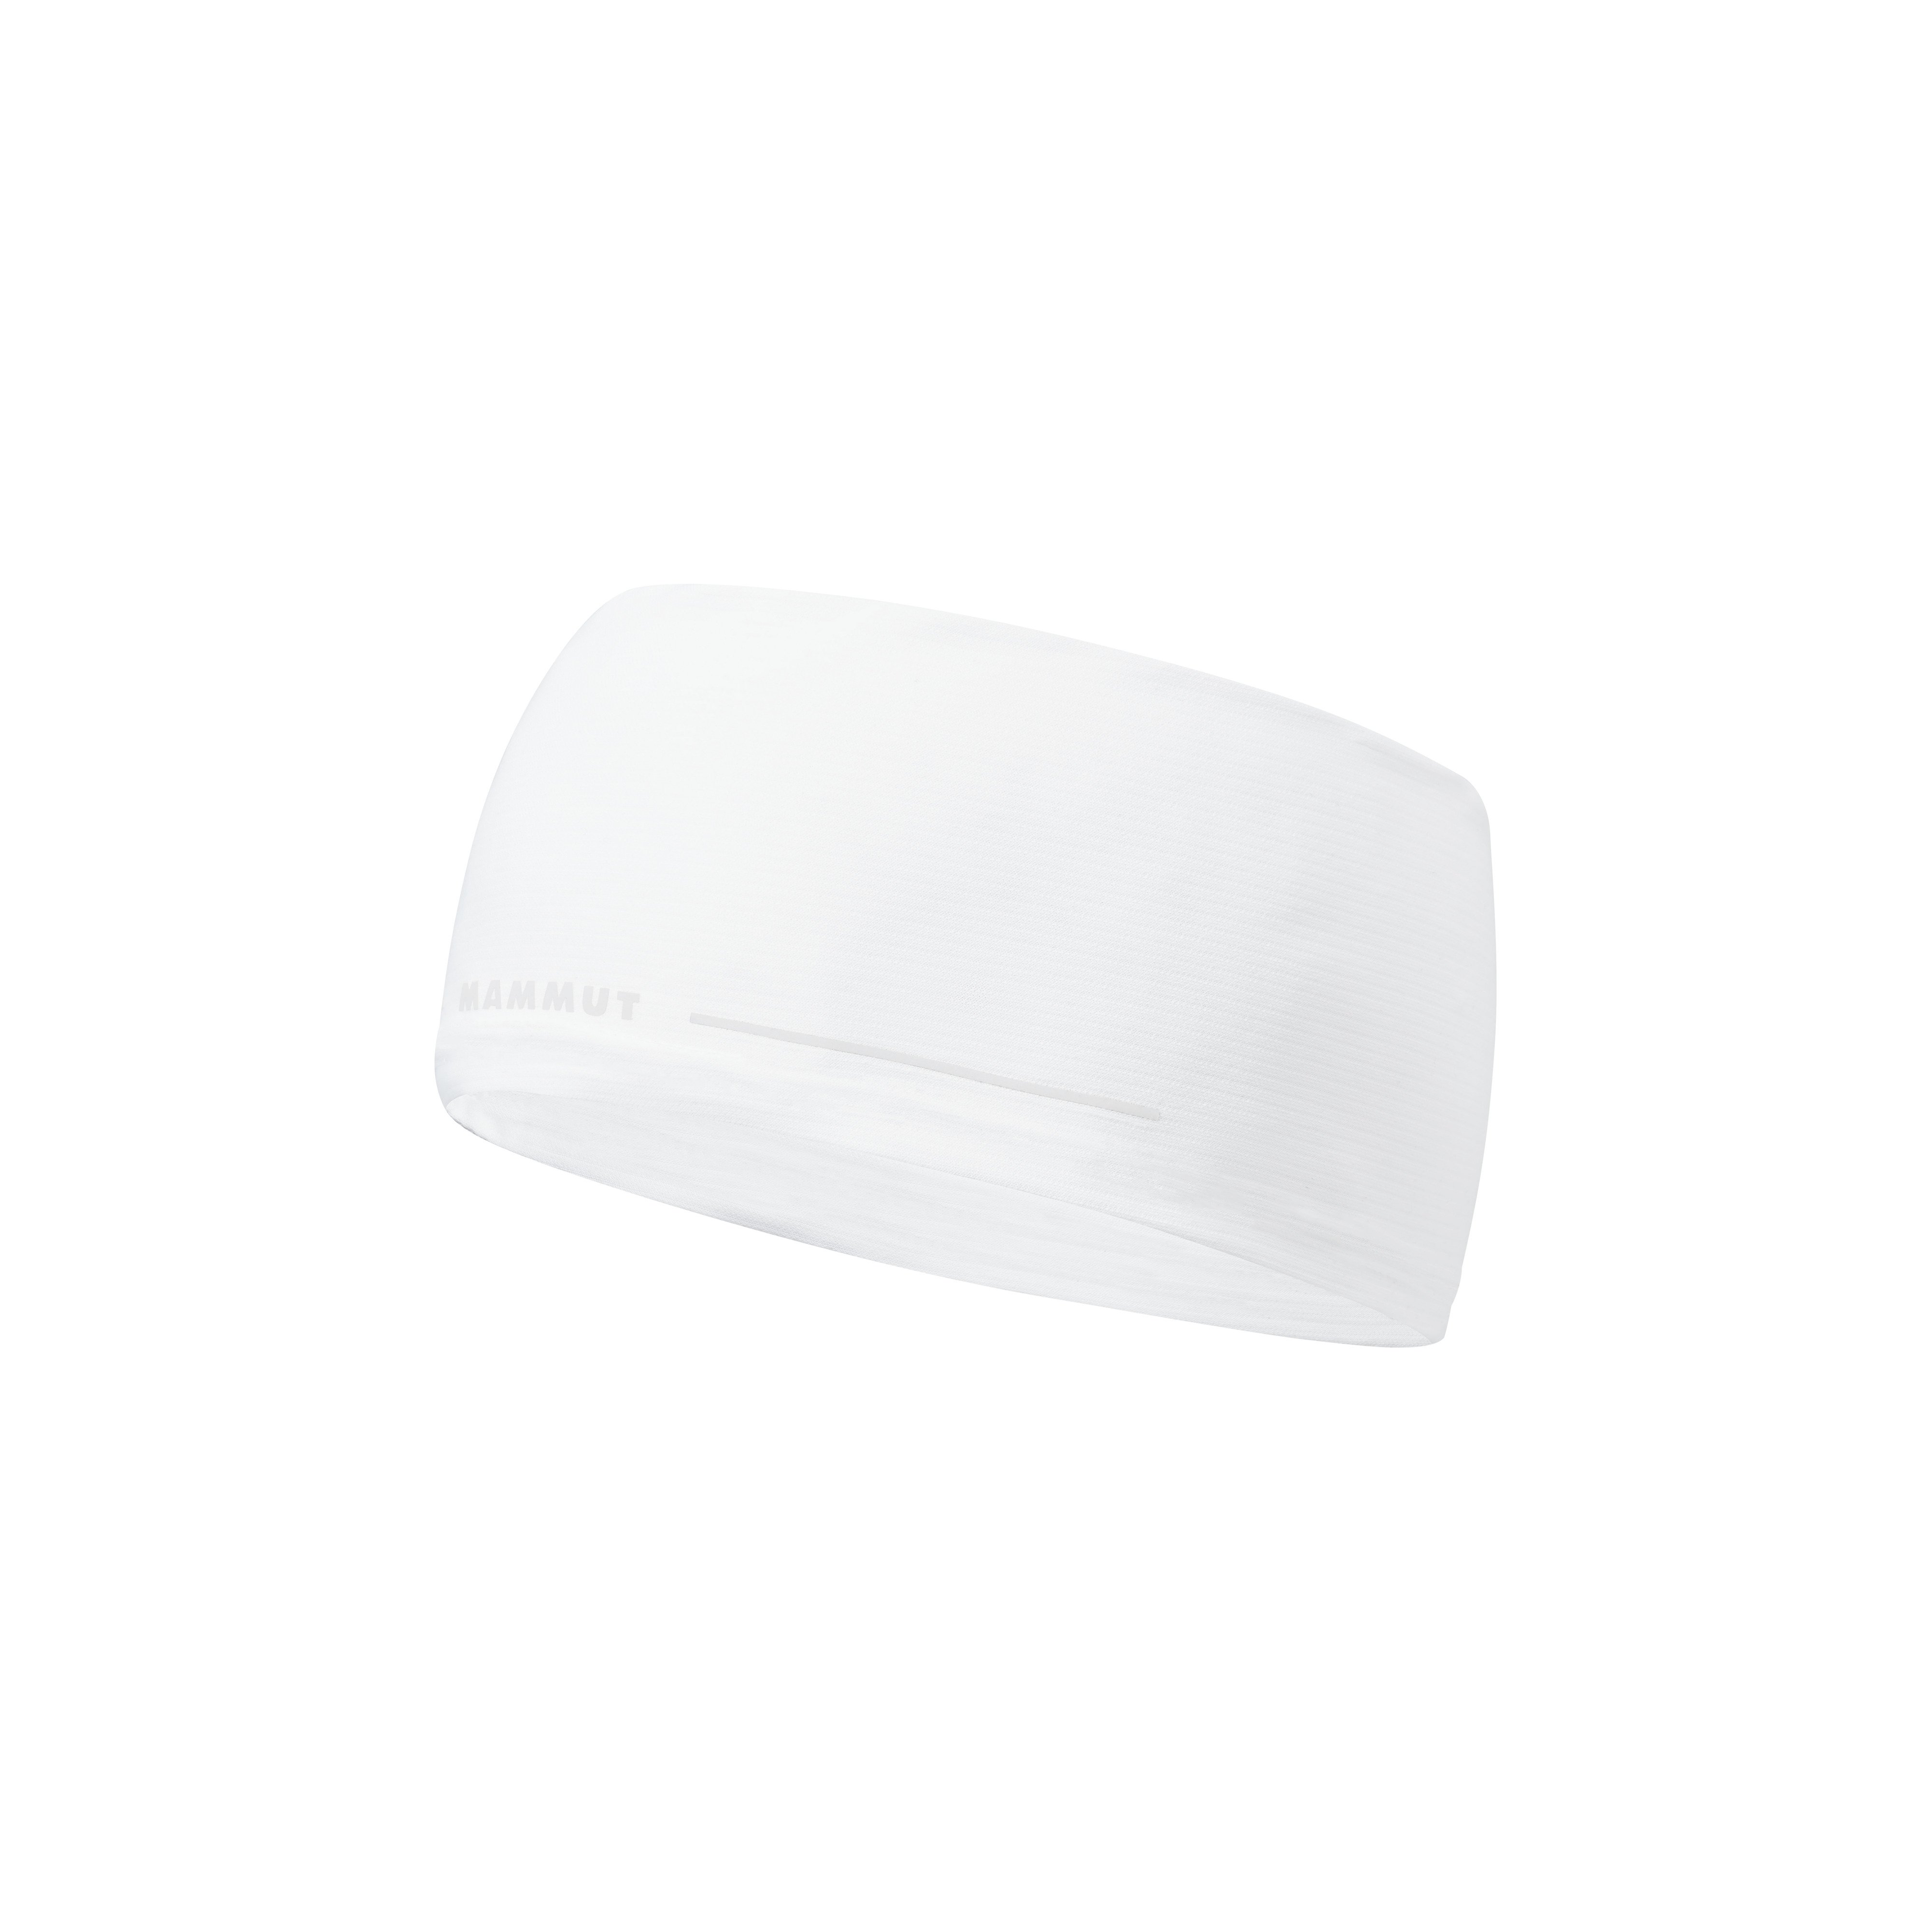 Aenergy Light Headband - white, one size product image